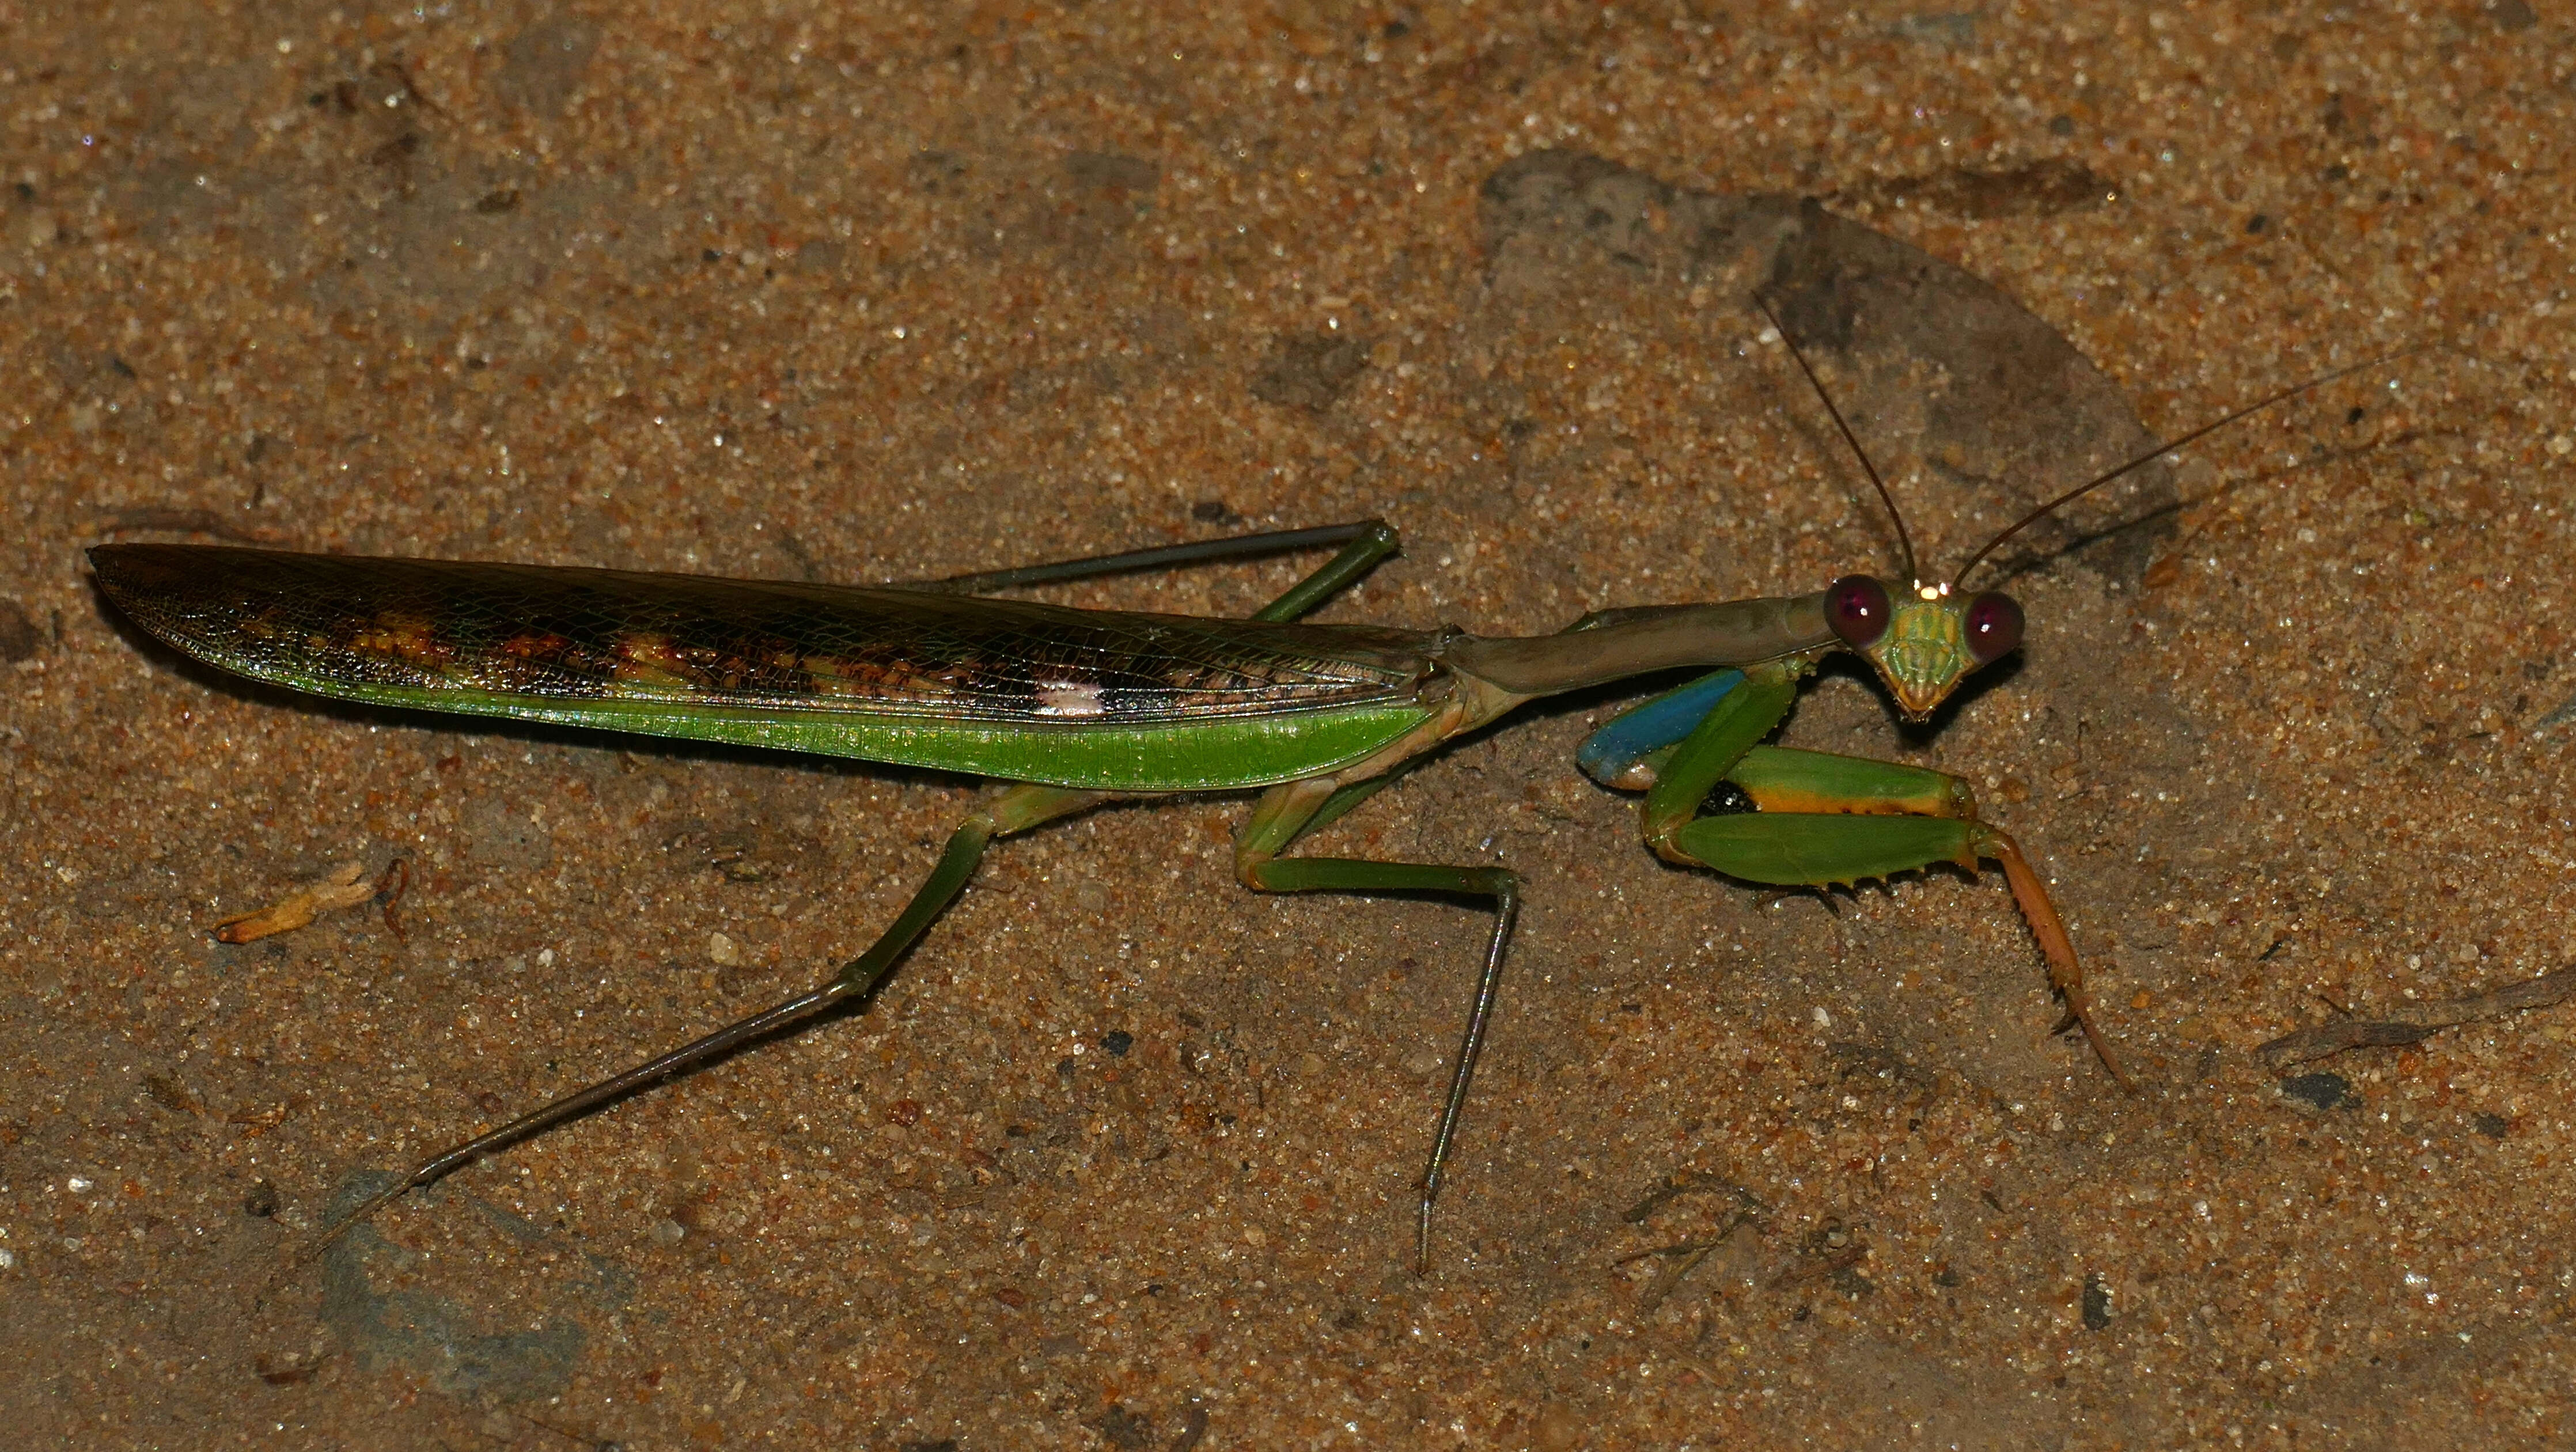 Image of African praying mantis